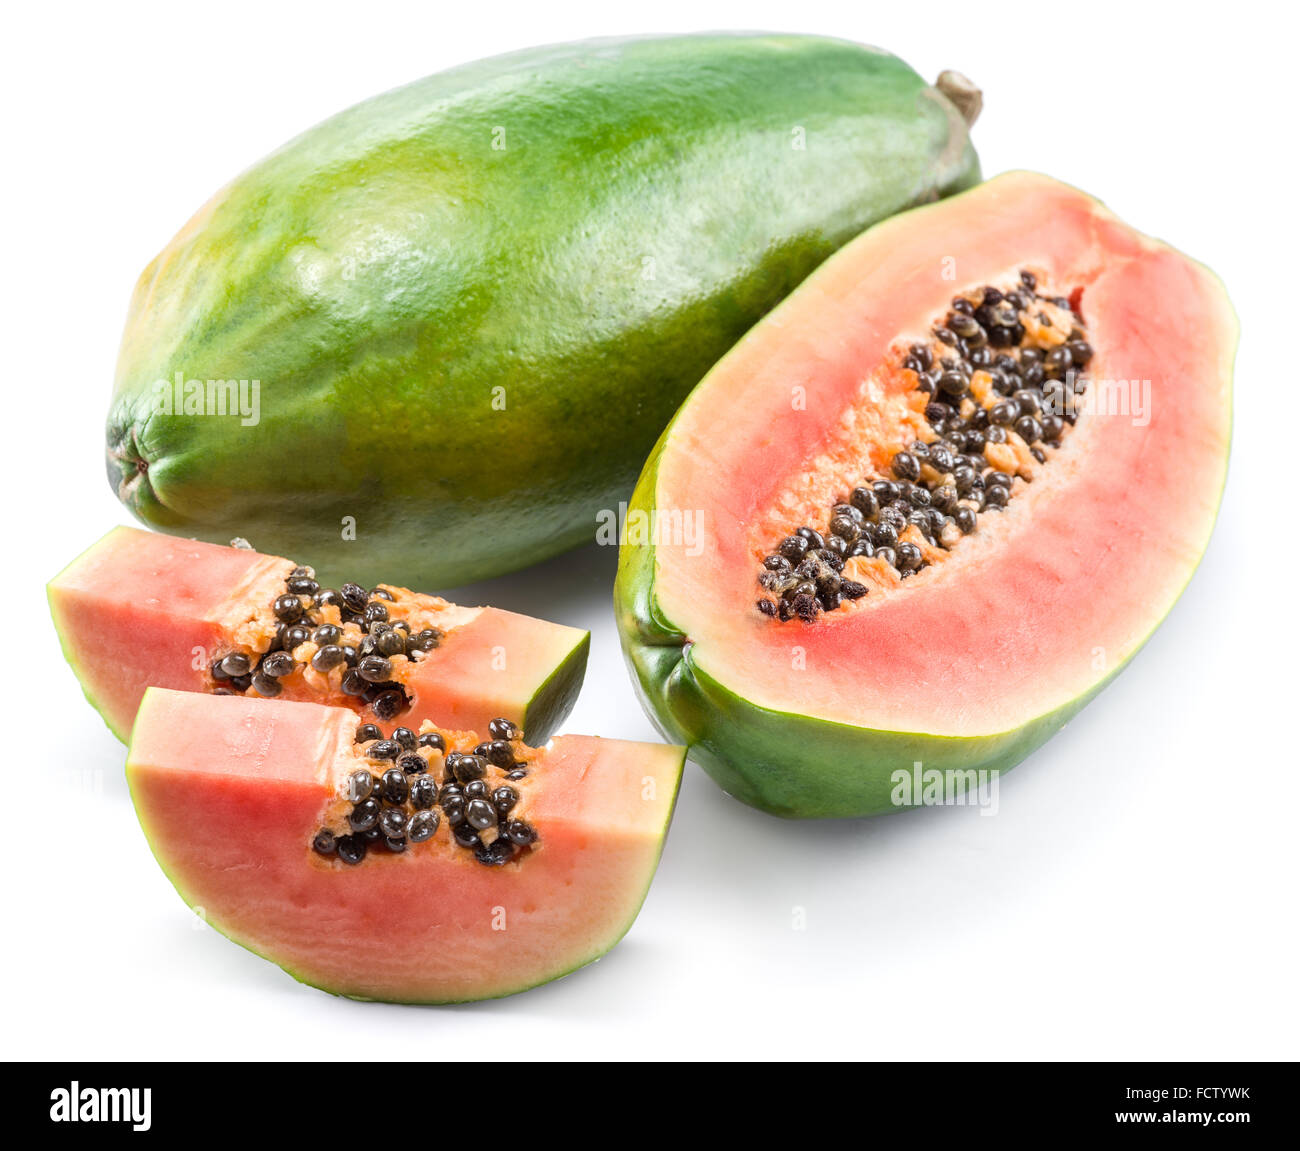 Papaya fruit isolated on a white background. Stock Photo